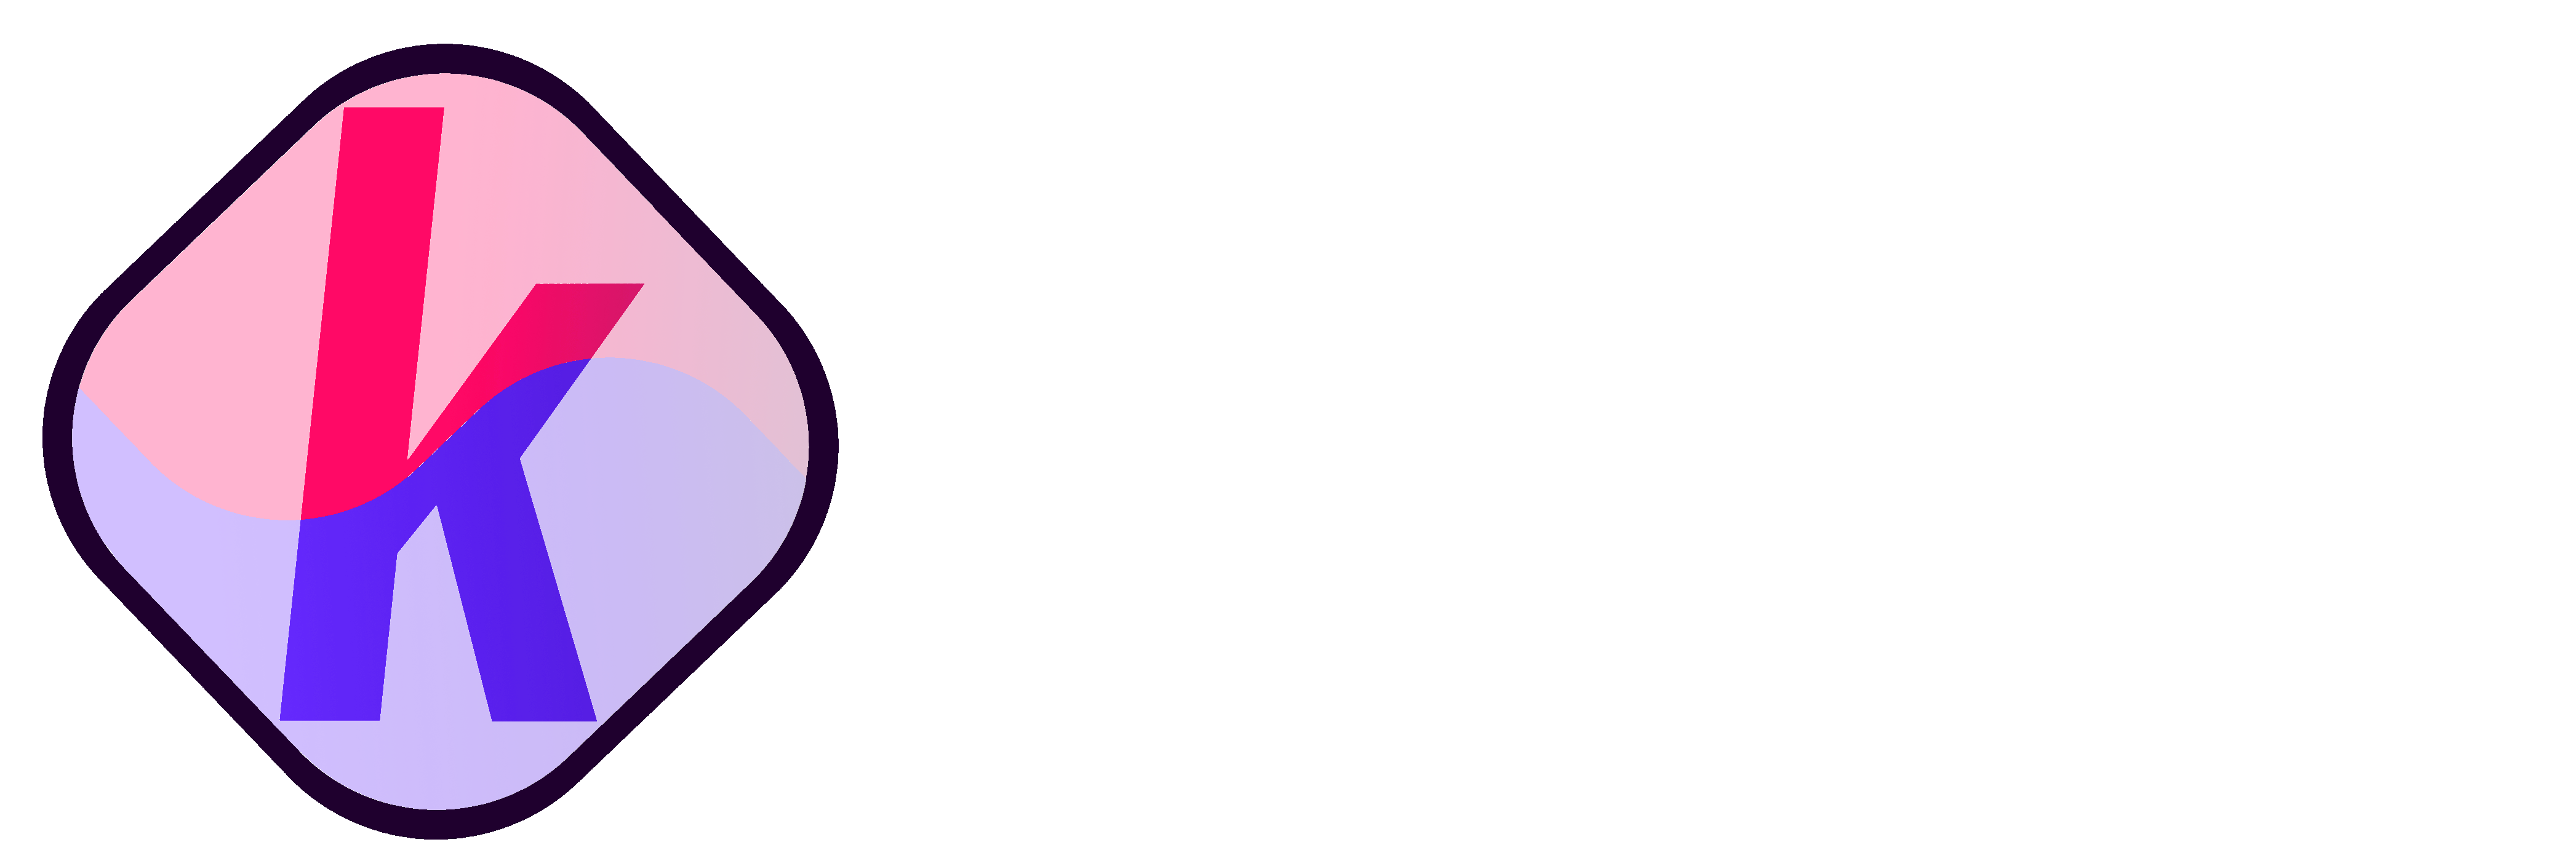 #SomosKoreo